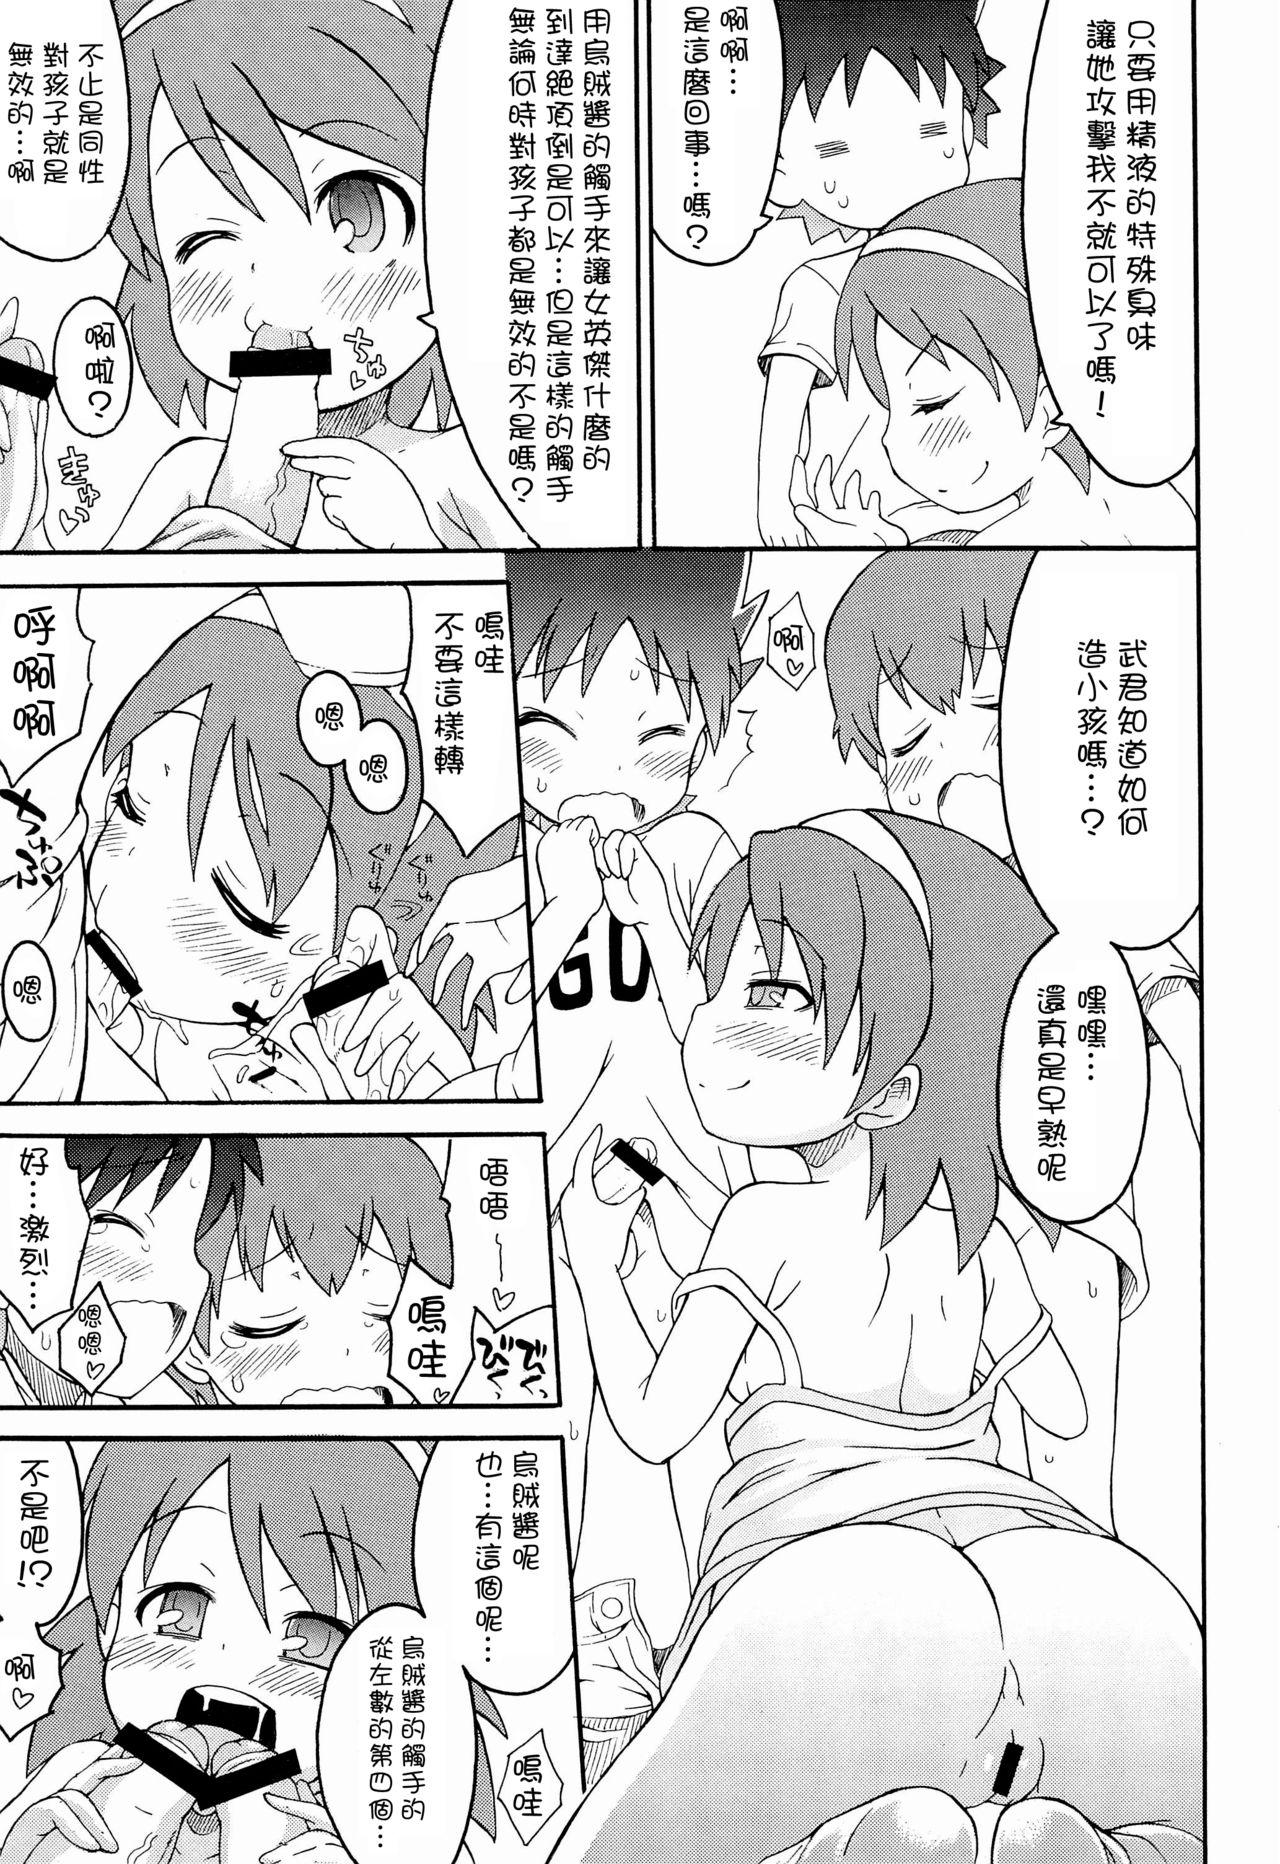 Cdmx Shokushu Karamaru Ika no Wakusei - Shinryaku ika musume | invasion squid girl Club - Page 9